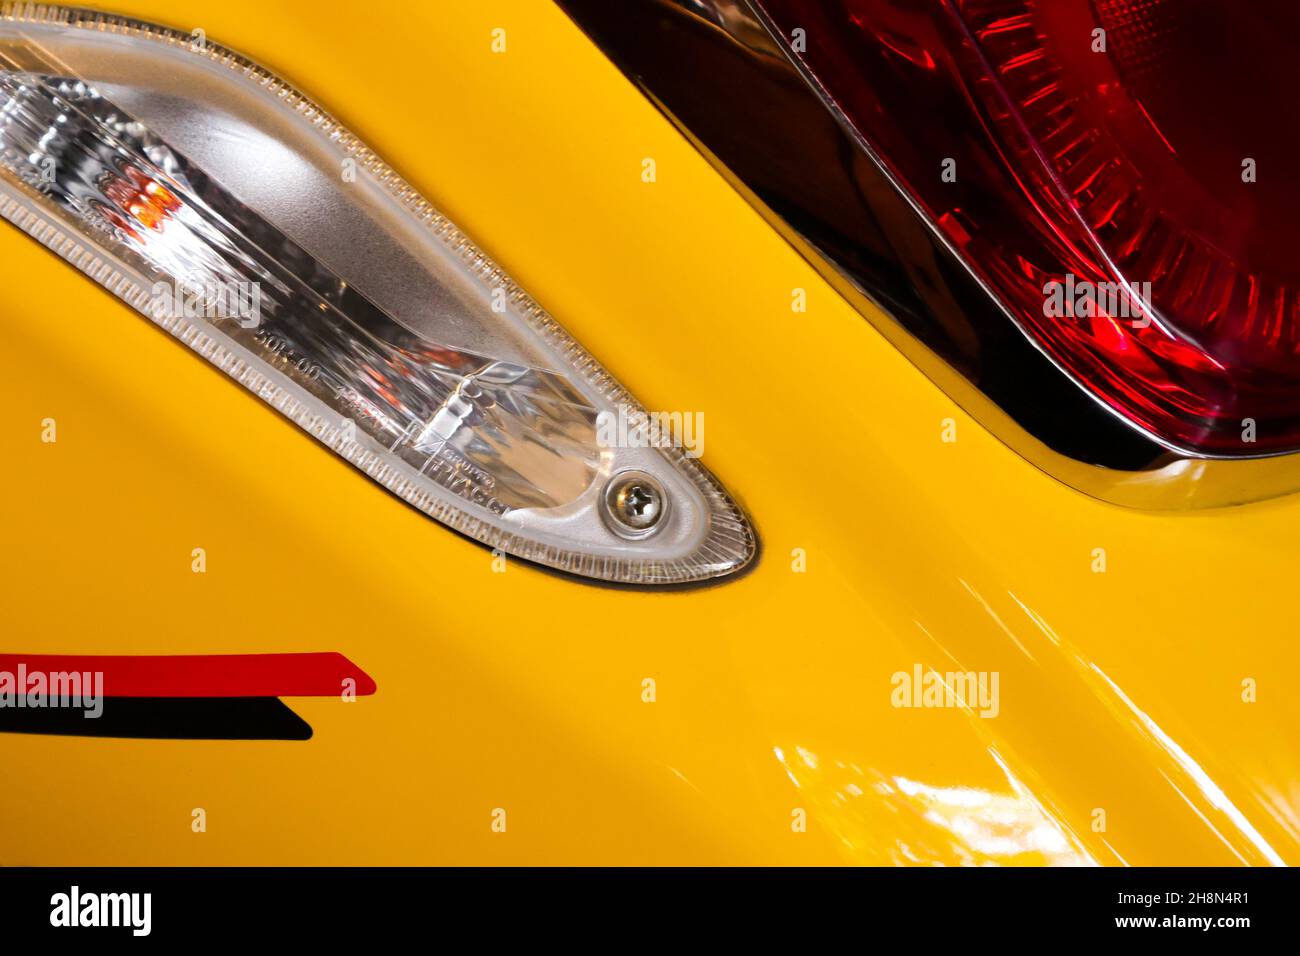 Bellissimo dettaglio della moto gialla Foto Stock